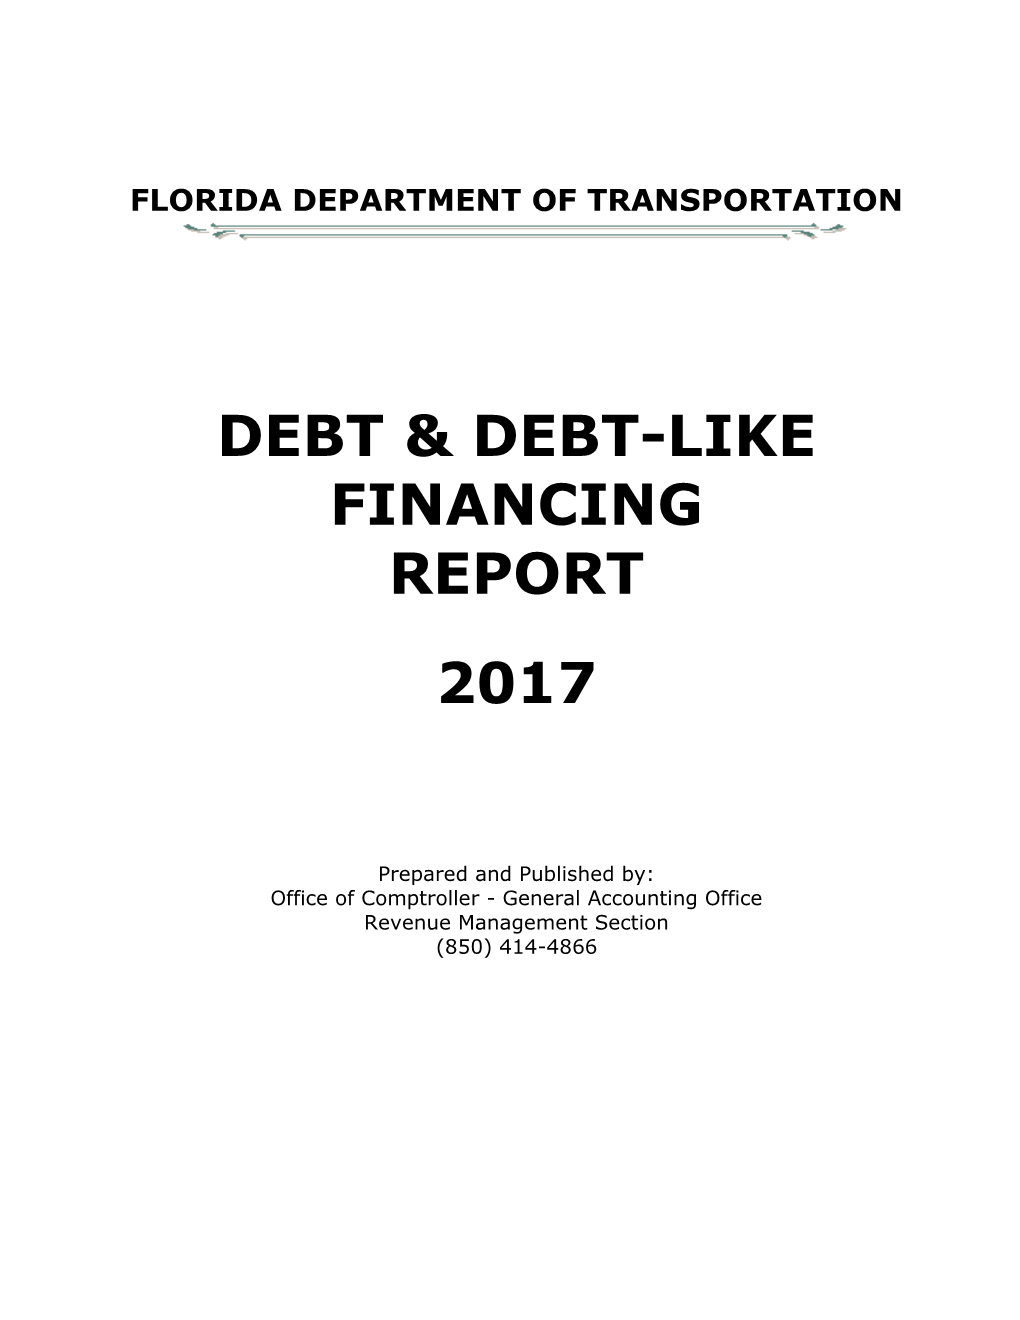 Debt & Debt-Like Financing Report 2017